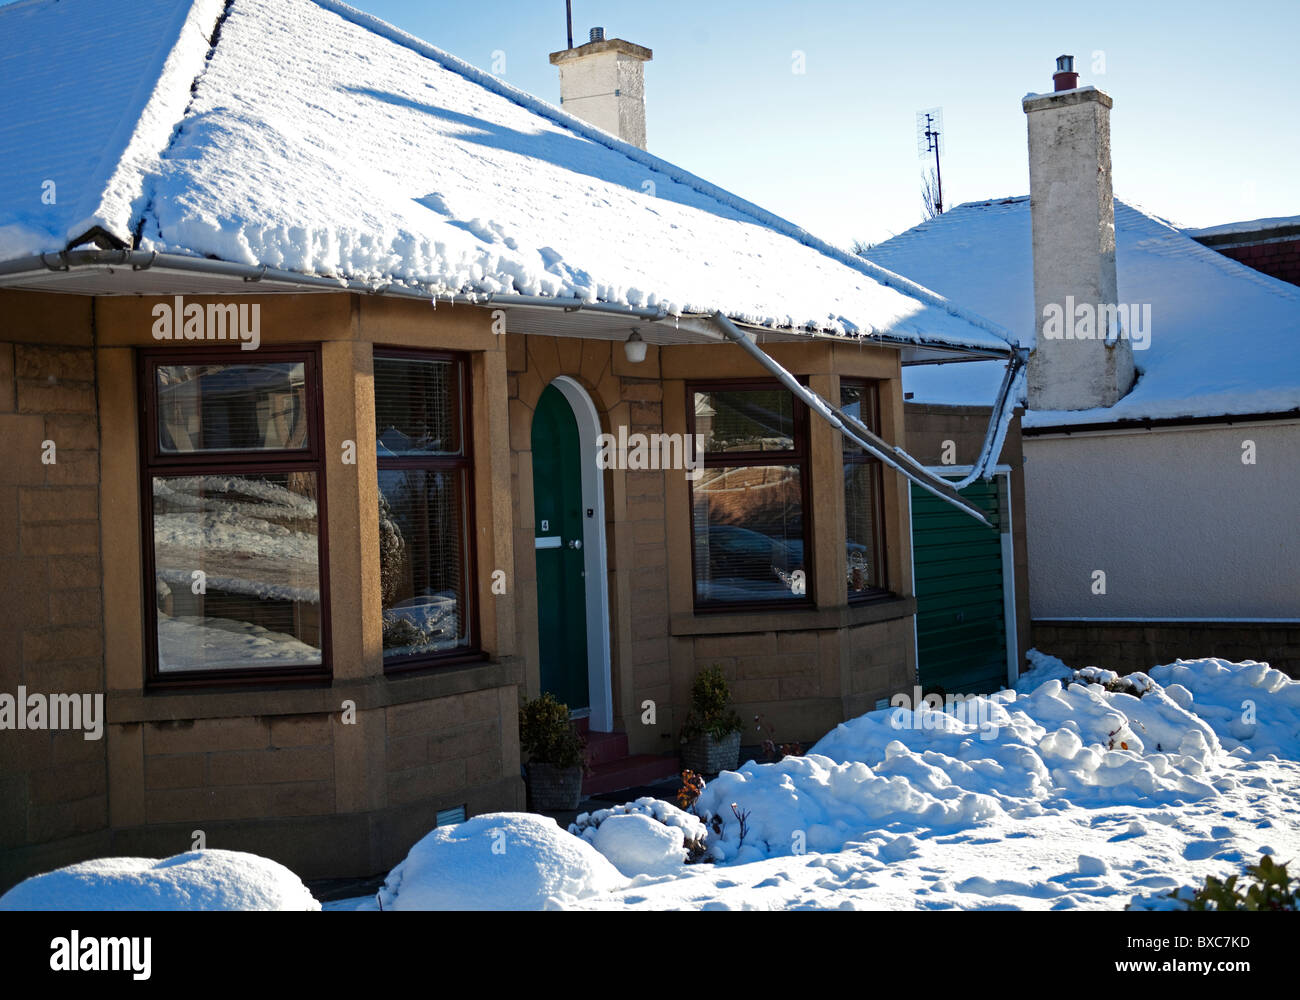 In inverno la neve danni, crollo del tetto grondaie dovuta al gelido condizioni meteo Foto Stock